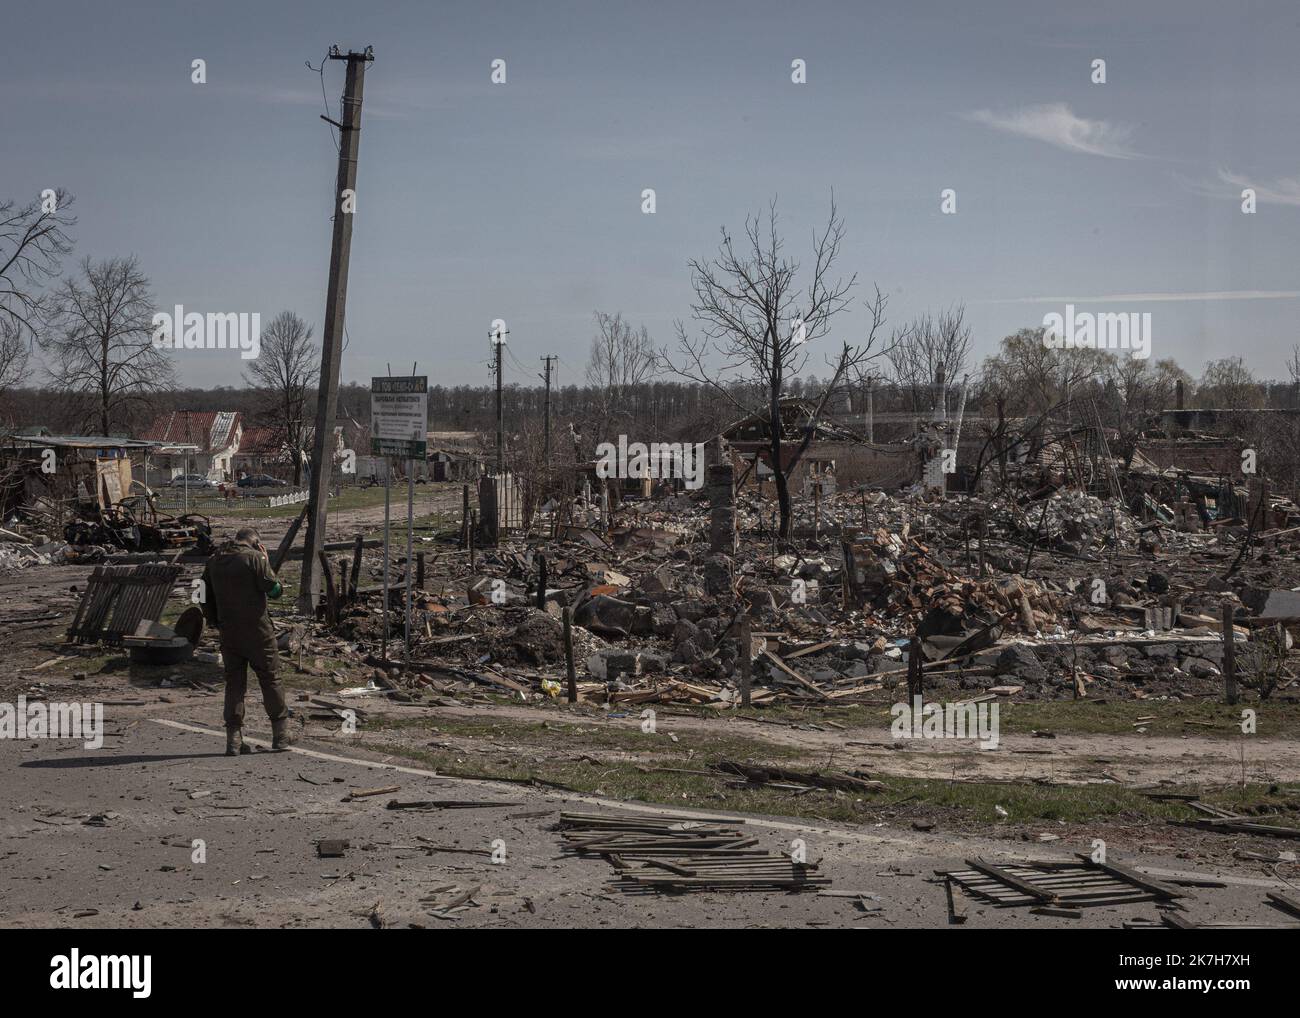 ©Sadak Souici / Le Pictorium/MAXPPP - Tchernihiv 15/04/2022 Sadak Souici / Le Pictorium - 15/4/2022 - Ukraine / Tchernihiv - Le quartier residentiel de Novoselivka, a Tchernihiv, fut presque entierement rase par les attaques russes. Tchernihiv, au nord est de Kiew proche de la frontiere avec la bielorussie, a subit de plein fouet l'avancee russe. Bombardee de maniere intensive, les envahisseurs tenterent dix fois, en vain, d'occuper la ville. Une Operation qui couta tres cher a la ville, donnant lieu a des Quartiers entierement detruits, des immeubles eventres, et des vies brenners. Selon le go Stockfoto